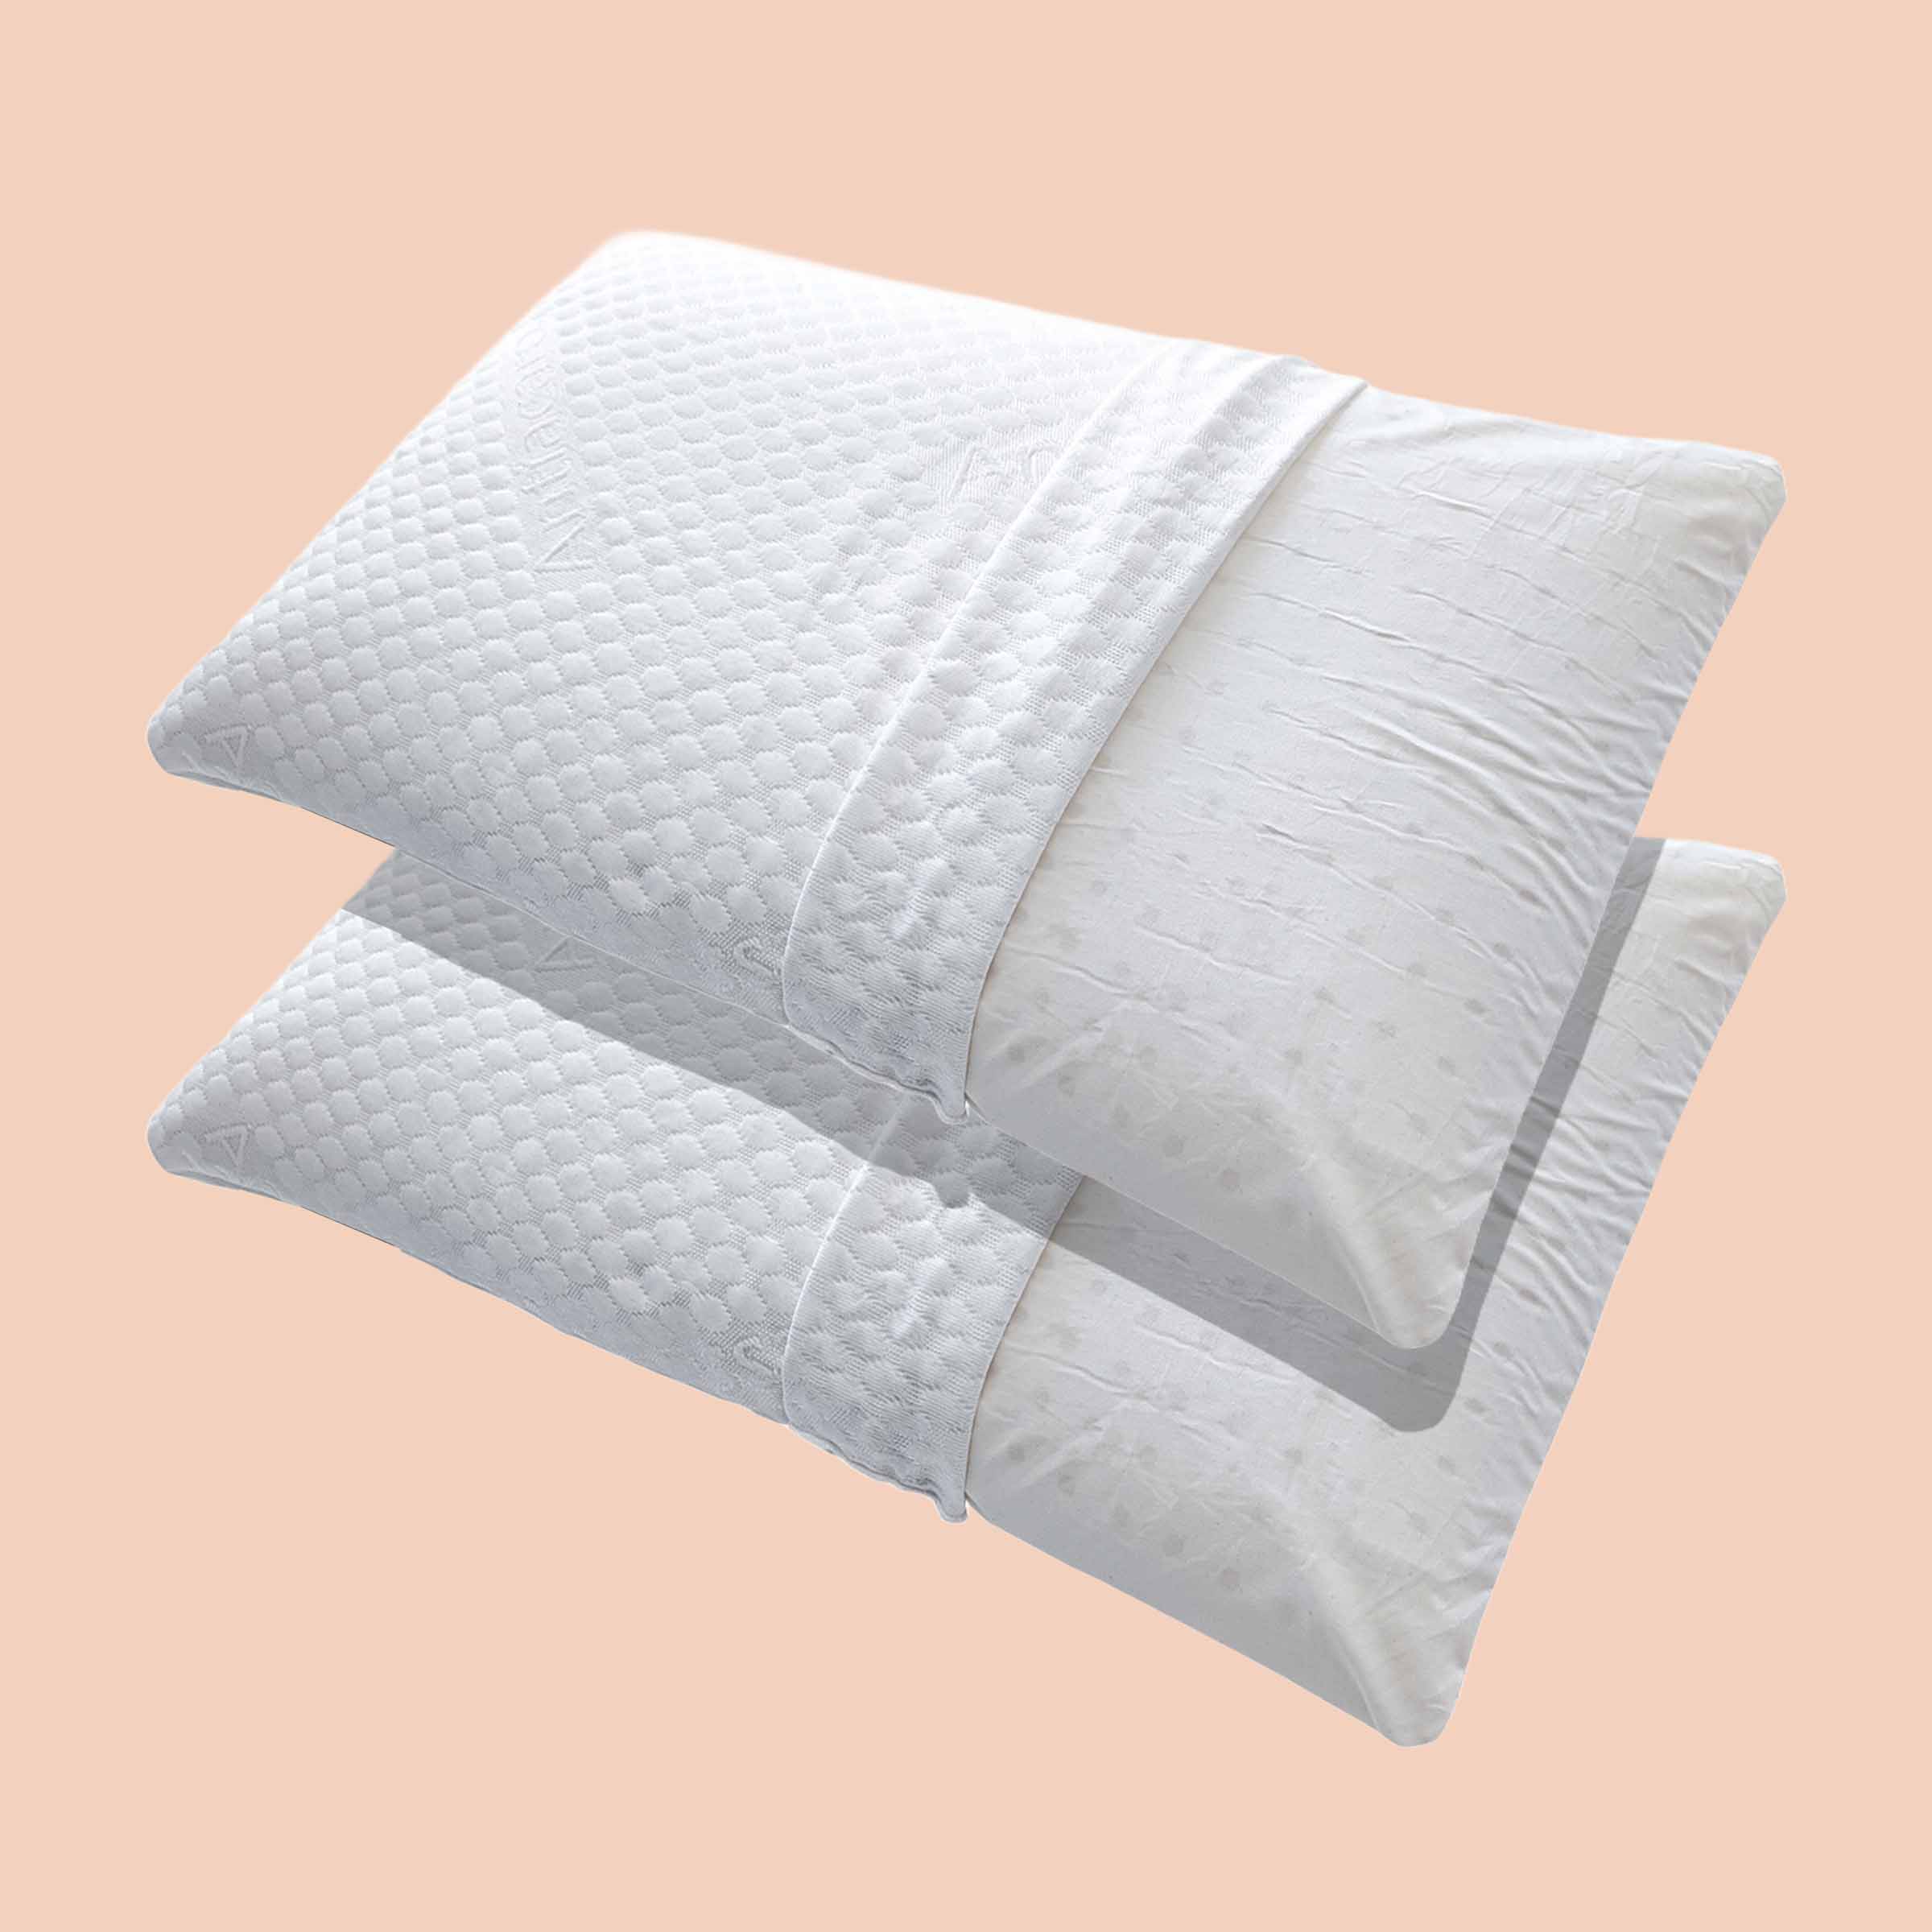 Due cuscini Bologna di Beliamo in un bundle, progettati per offrire comfort e supporto ergonomico per un sonno riposante